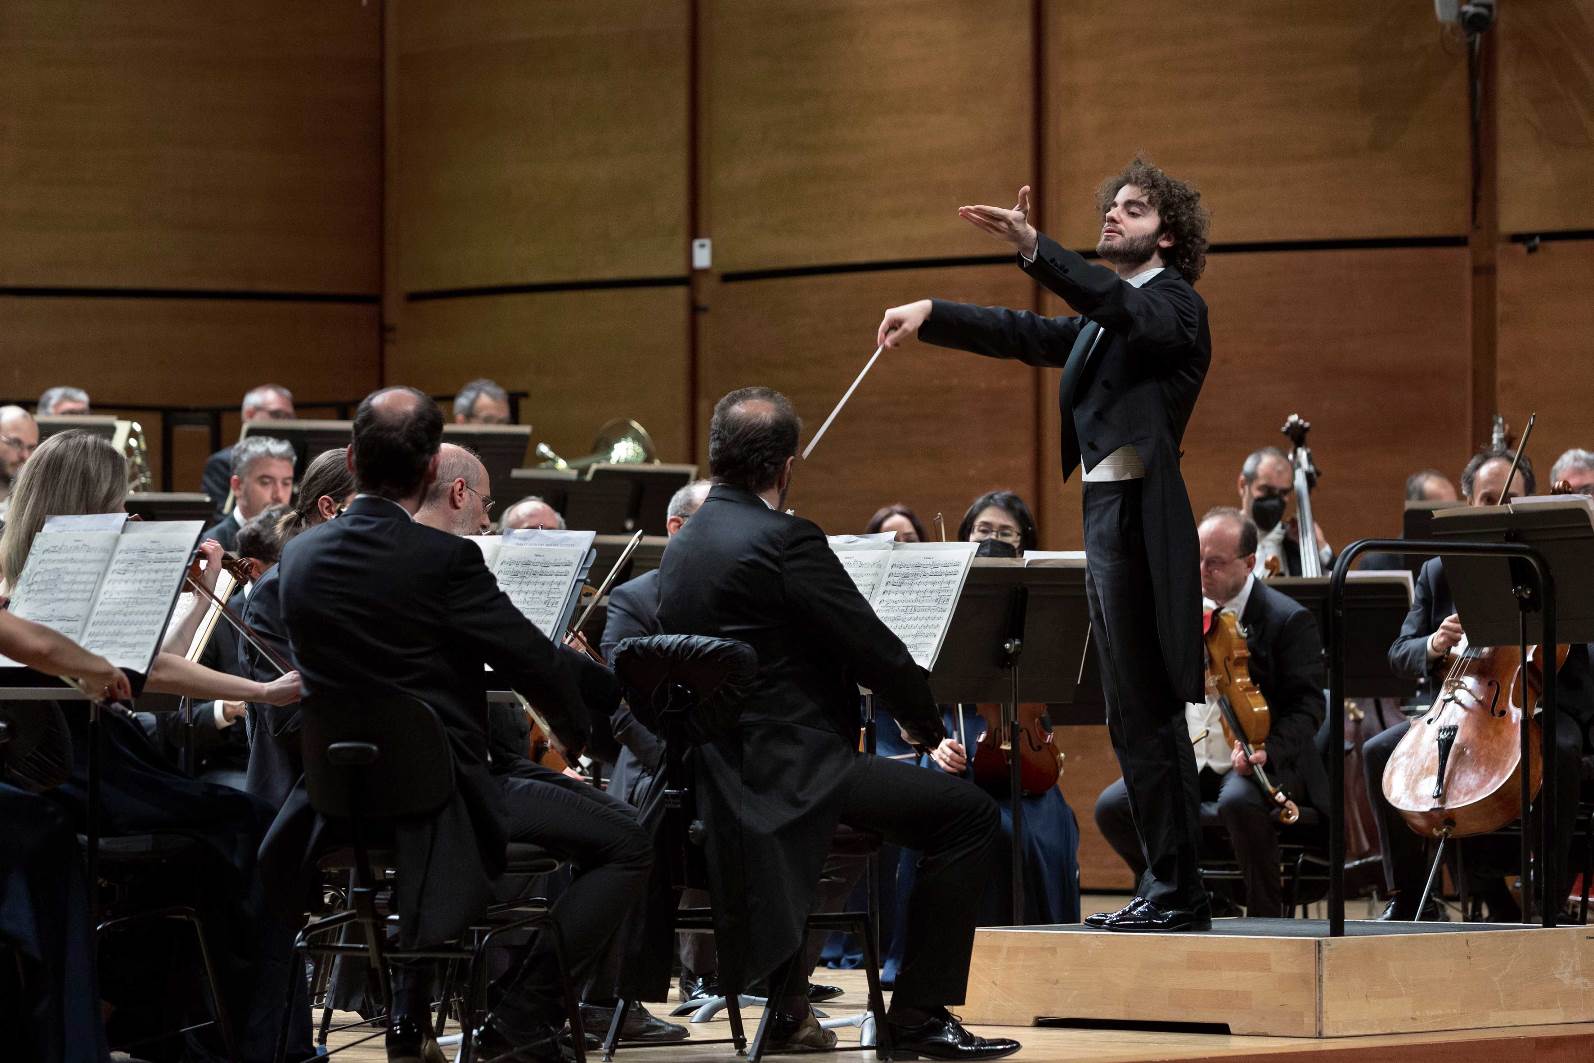 Foto: Emmanuel Tjeknavorian con l'Orchestra Sinfonica di Milano nel concerto “Mille e una notte” © Angelica Concari